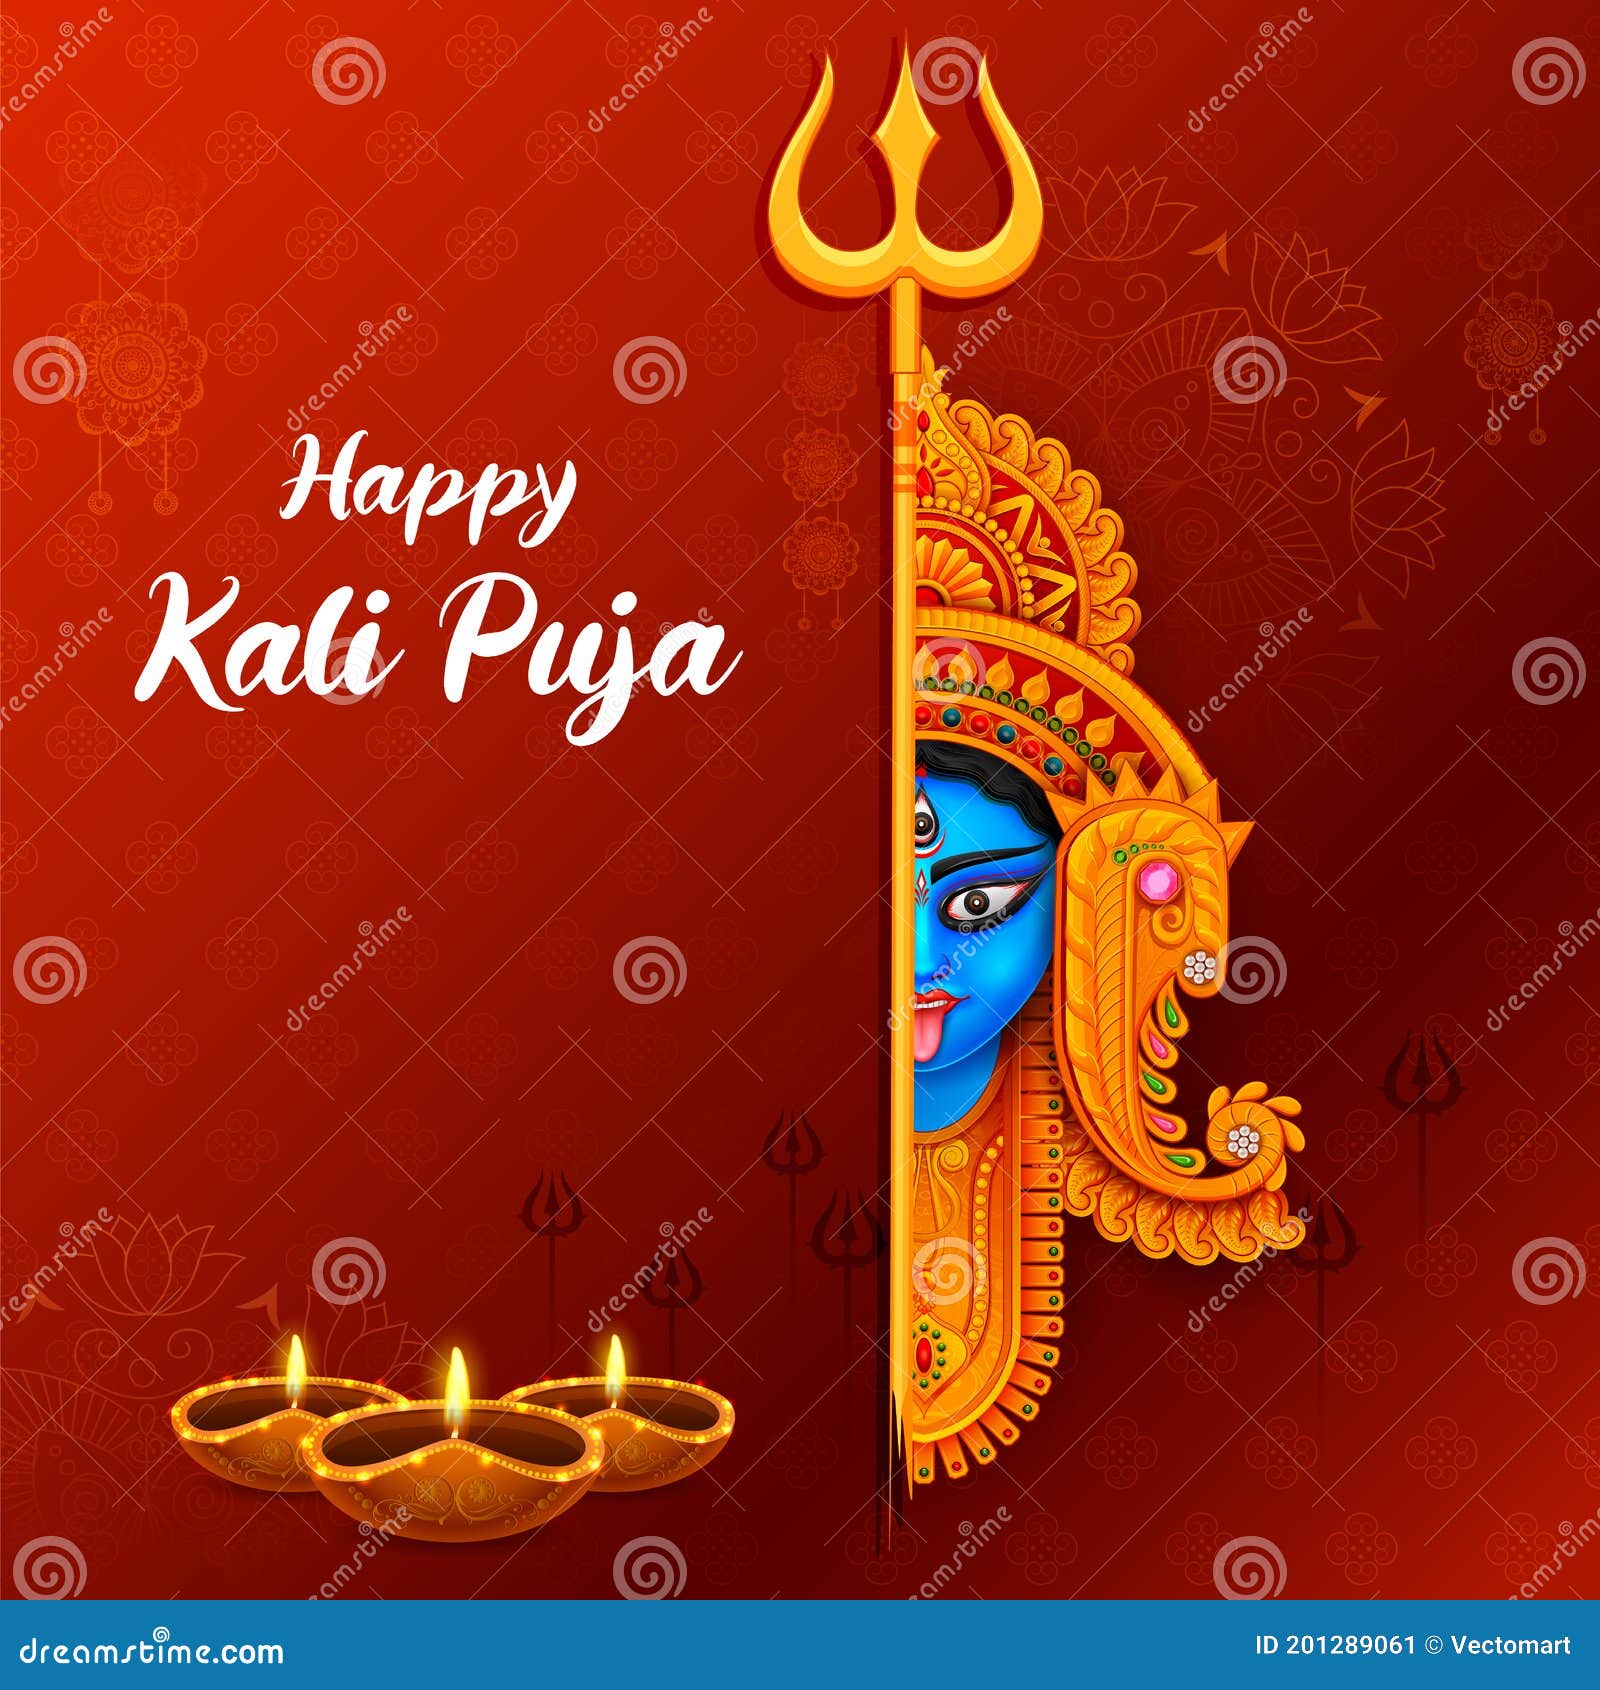 Nền Kali Pooja Diwali của ngày lễ Ấn Độ được lấy cảm hứng từ vẻ đẹp của nữ thần Kali Maa. Với những bức ảnh nền đầy sắc màu và hoa văn phức tạp, bạn sẽ được trải nghiệm sự trang trọng và tôn nghiêm của ngày lễ này.